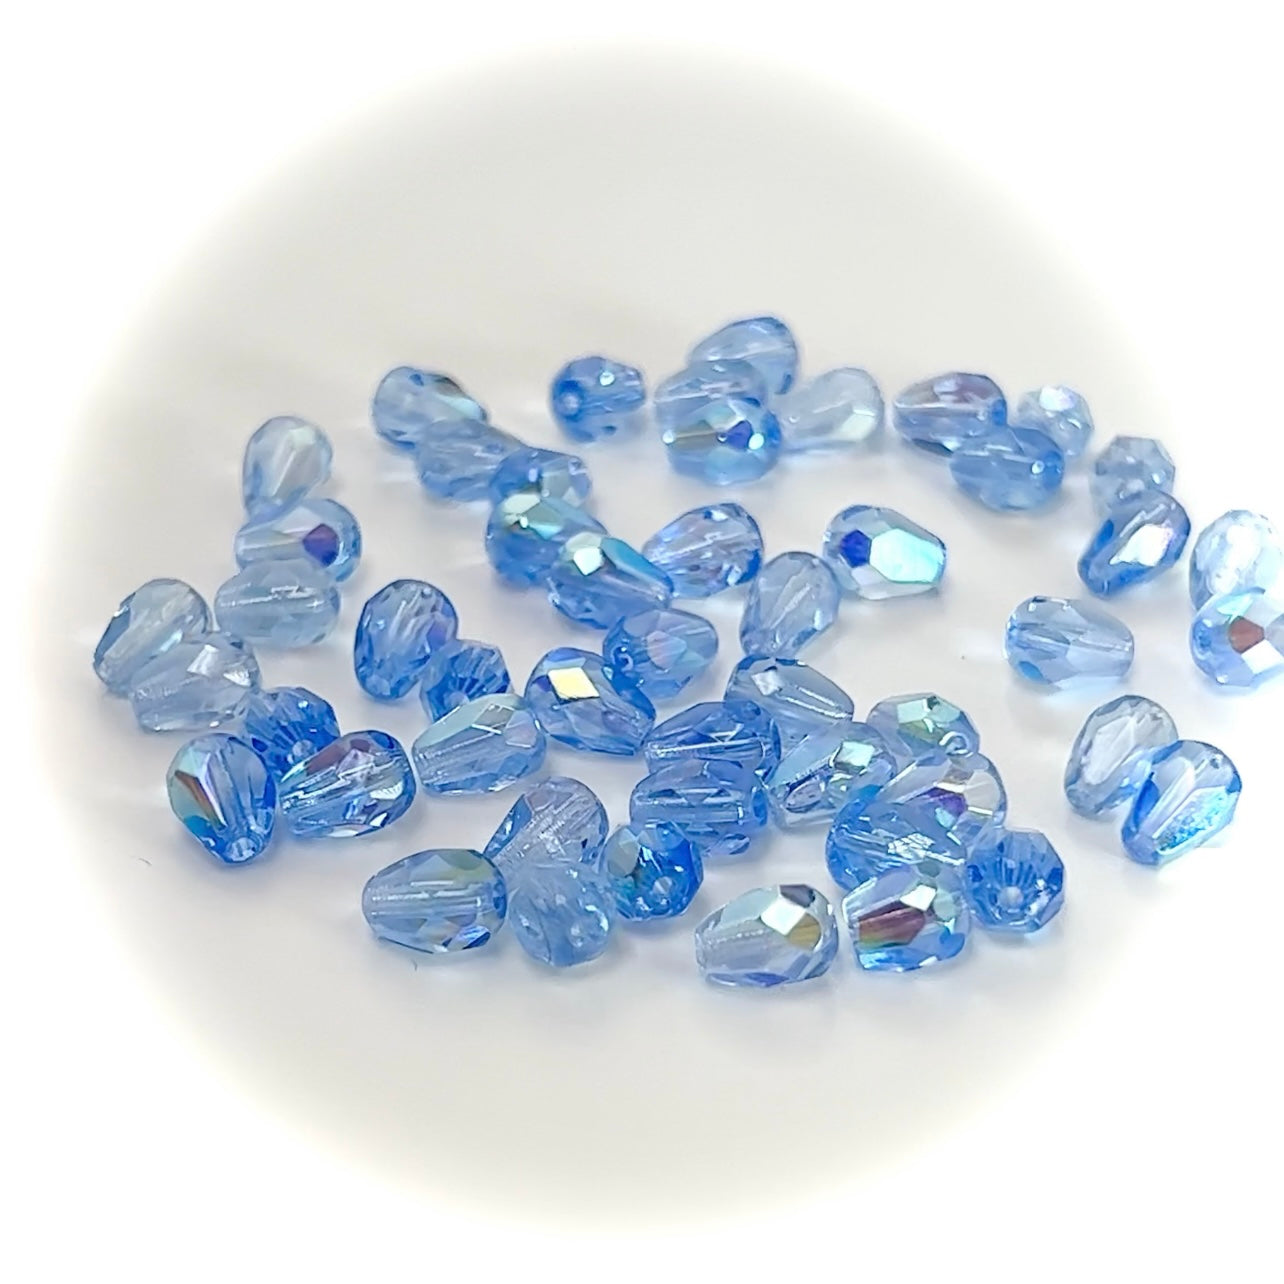 Czech Glass Pear Shaped Fire Polished Beads 8x6mm Light Sapphire AB coated blue Tear Drops 50 pieces J023-P389